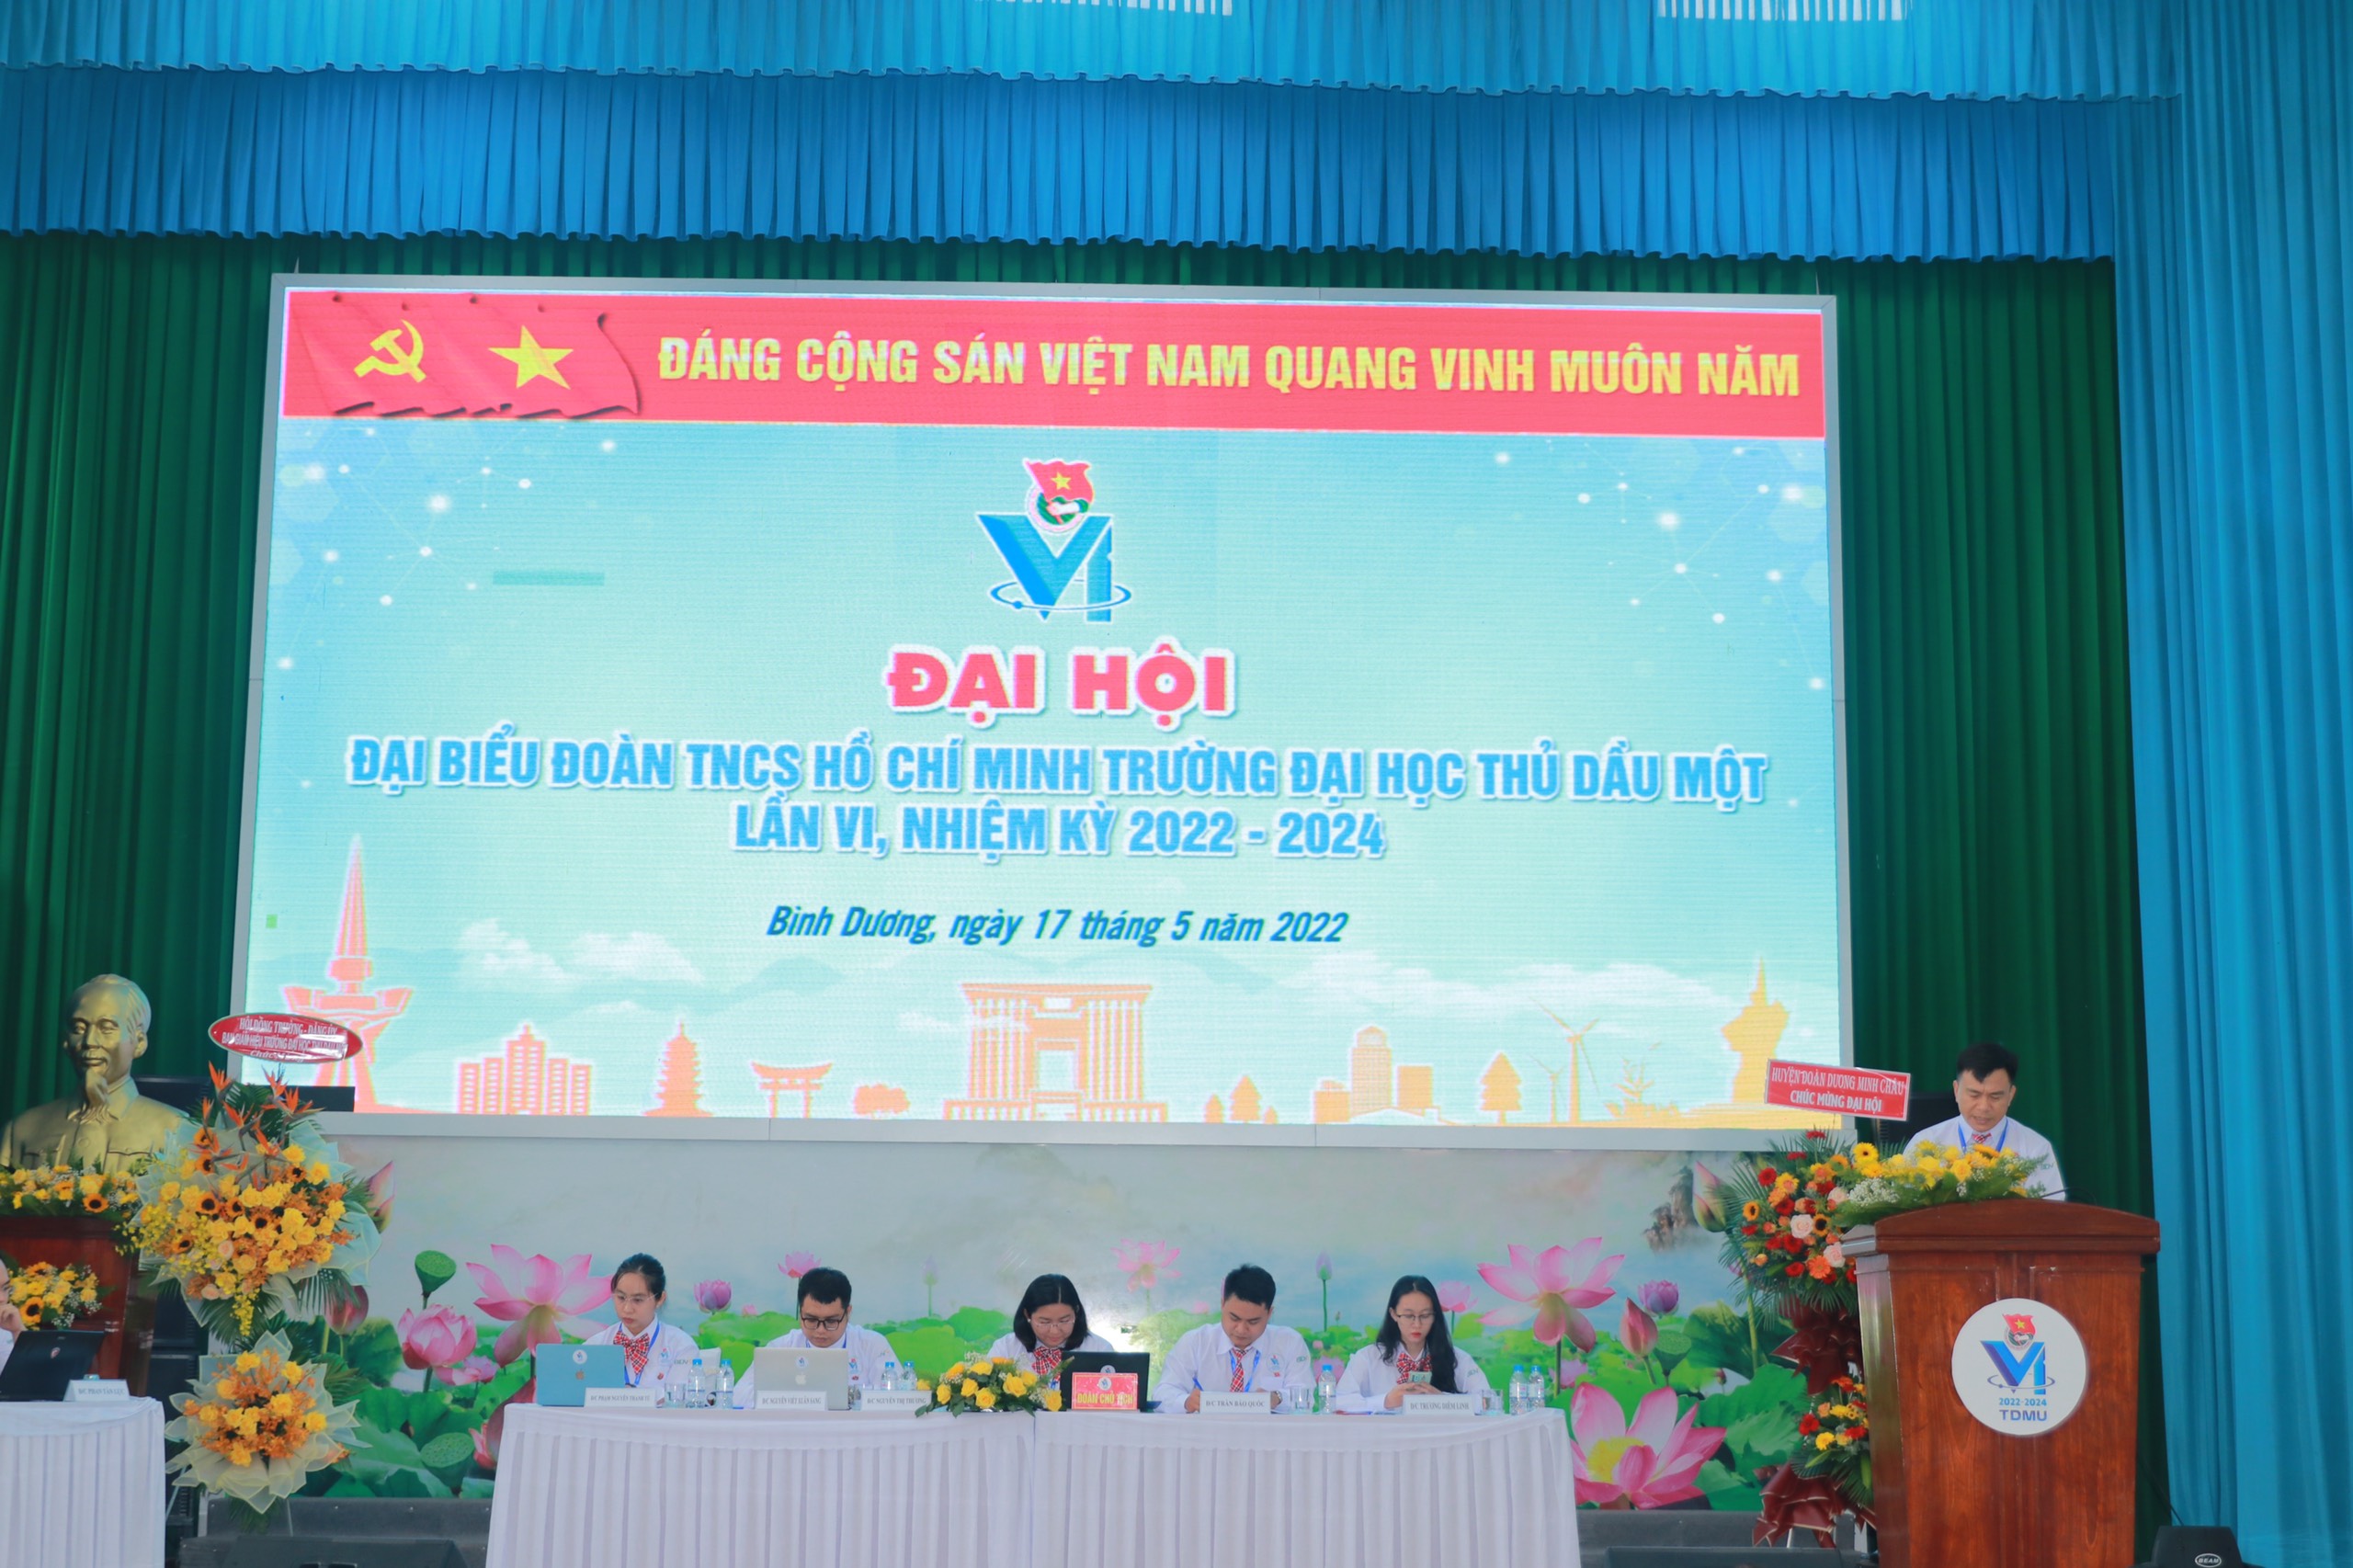 Đại hội đại biểu Đoàn TNCS Hồ Chí Minh Trường Đại học Thủ Dầu Một lần VI, nhiệm kỳ 2022-2024 - Phiên thứ nhất